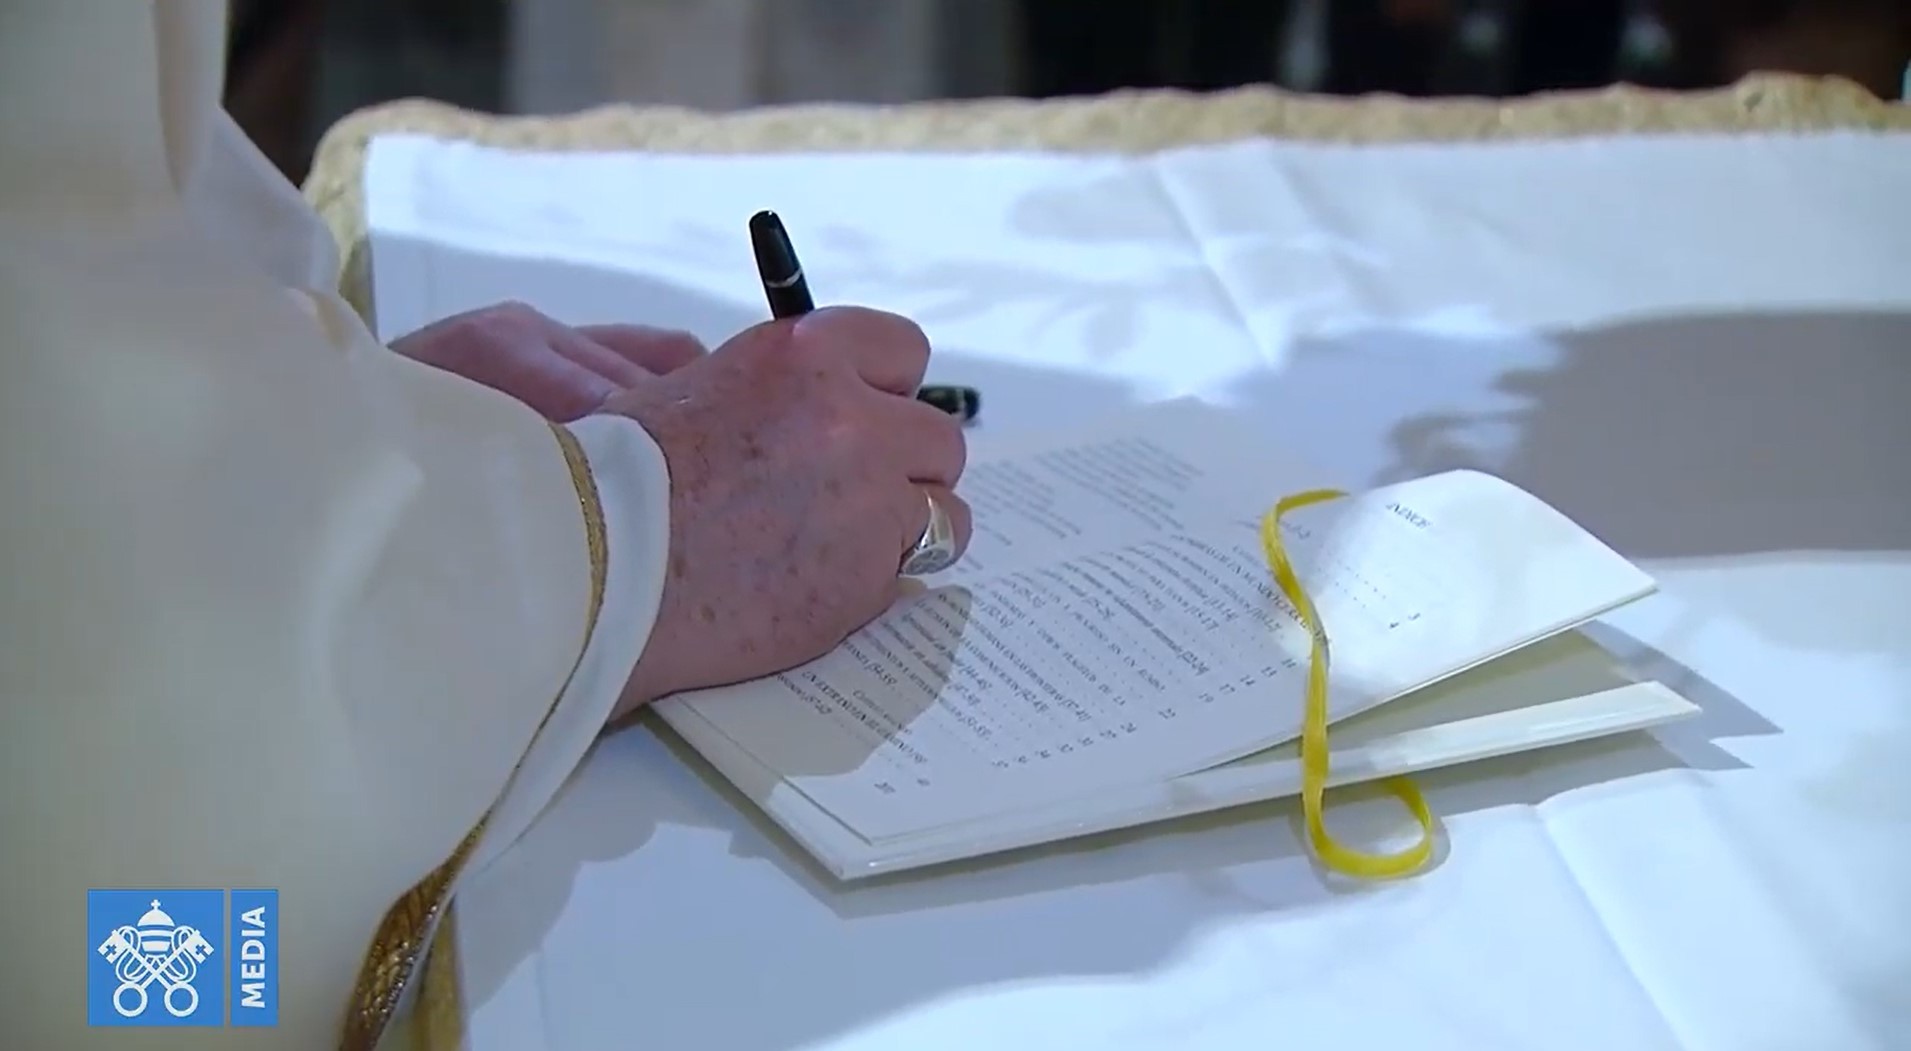 Paus zet handtekening in derde encycliek - Vatican News